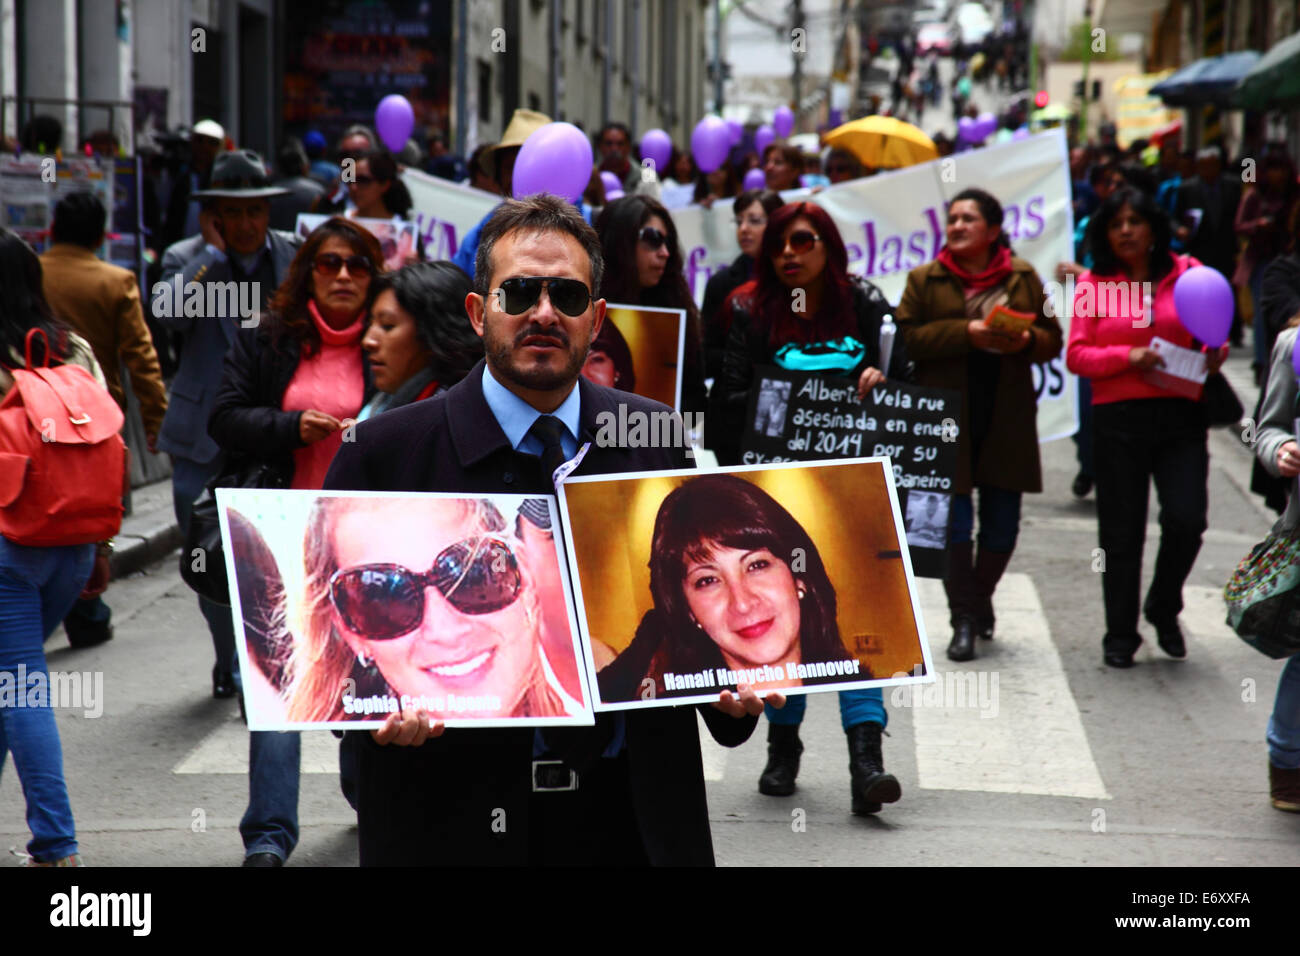 La Paz, Bolivien, 1. September 2014. Ein Mann hält Fotos von Opfern Sophia Calvo Aponte und Hanali Huaycho während eines Marsches zum protest gegen Gewalt gegen Frauen und Machismo. Der Marsch war auch die jüngsten Erklärungen mehrere politische Kandidaten im aktuellen Wahlkampf zurückweise, die angezeigt werden, das Problem zu minimieren. Laut einem Bericht der WHO im Januar 2013 Bolivien ist das Land mit der höchsten Rate der Gewalt gegen Frauen in Lateinamerika, wurden seit 2006 453 Fälle von Frauenmorde in der aktuellen Regierung. Bildnachweis: James Brunker / Alamy Live News Stockfoto